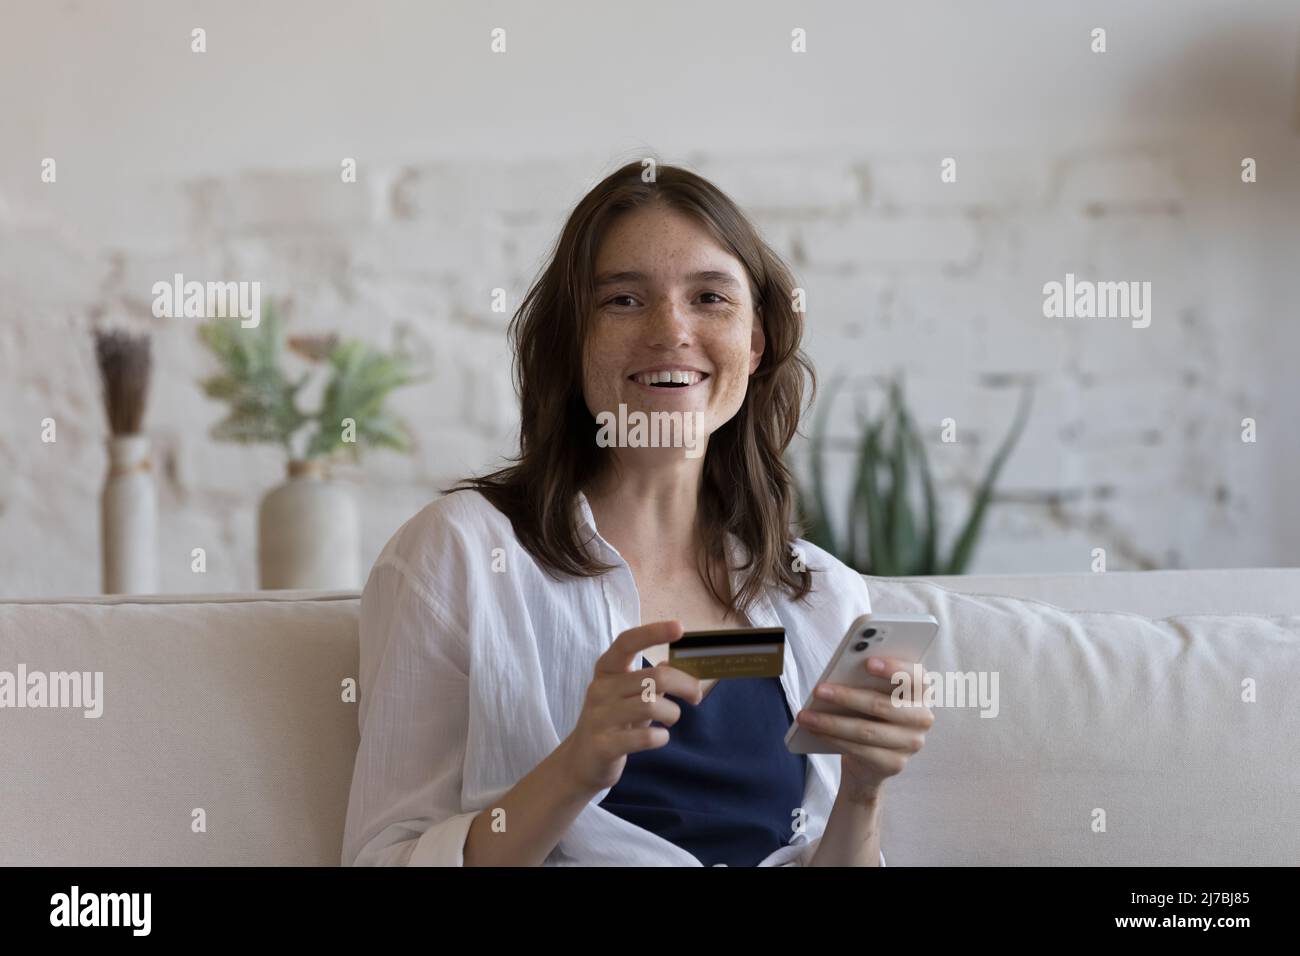 Glücklich fröhlich Millennial Kreditkarte Benutzer Mädchen Kopf geschossen Porträt Stockfoto